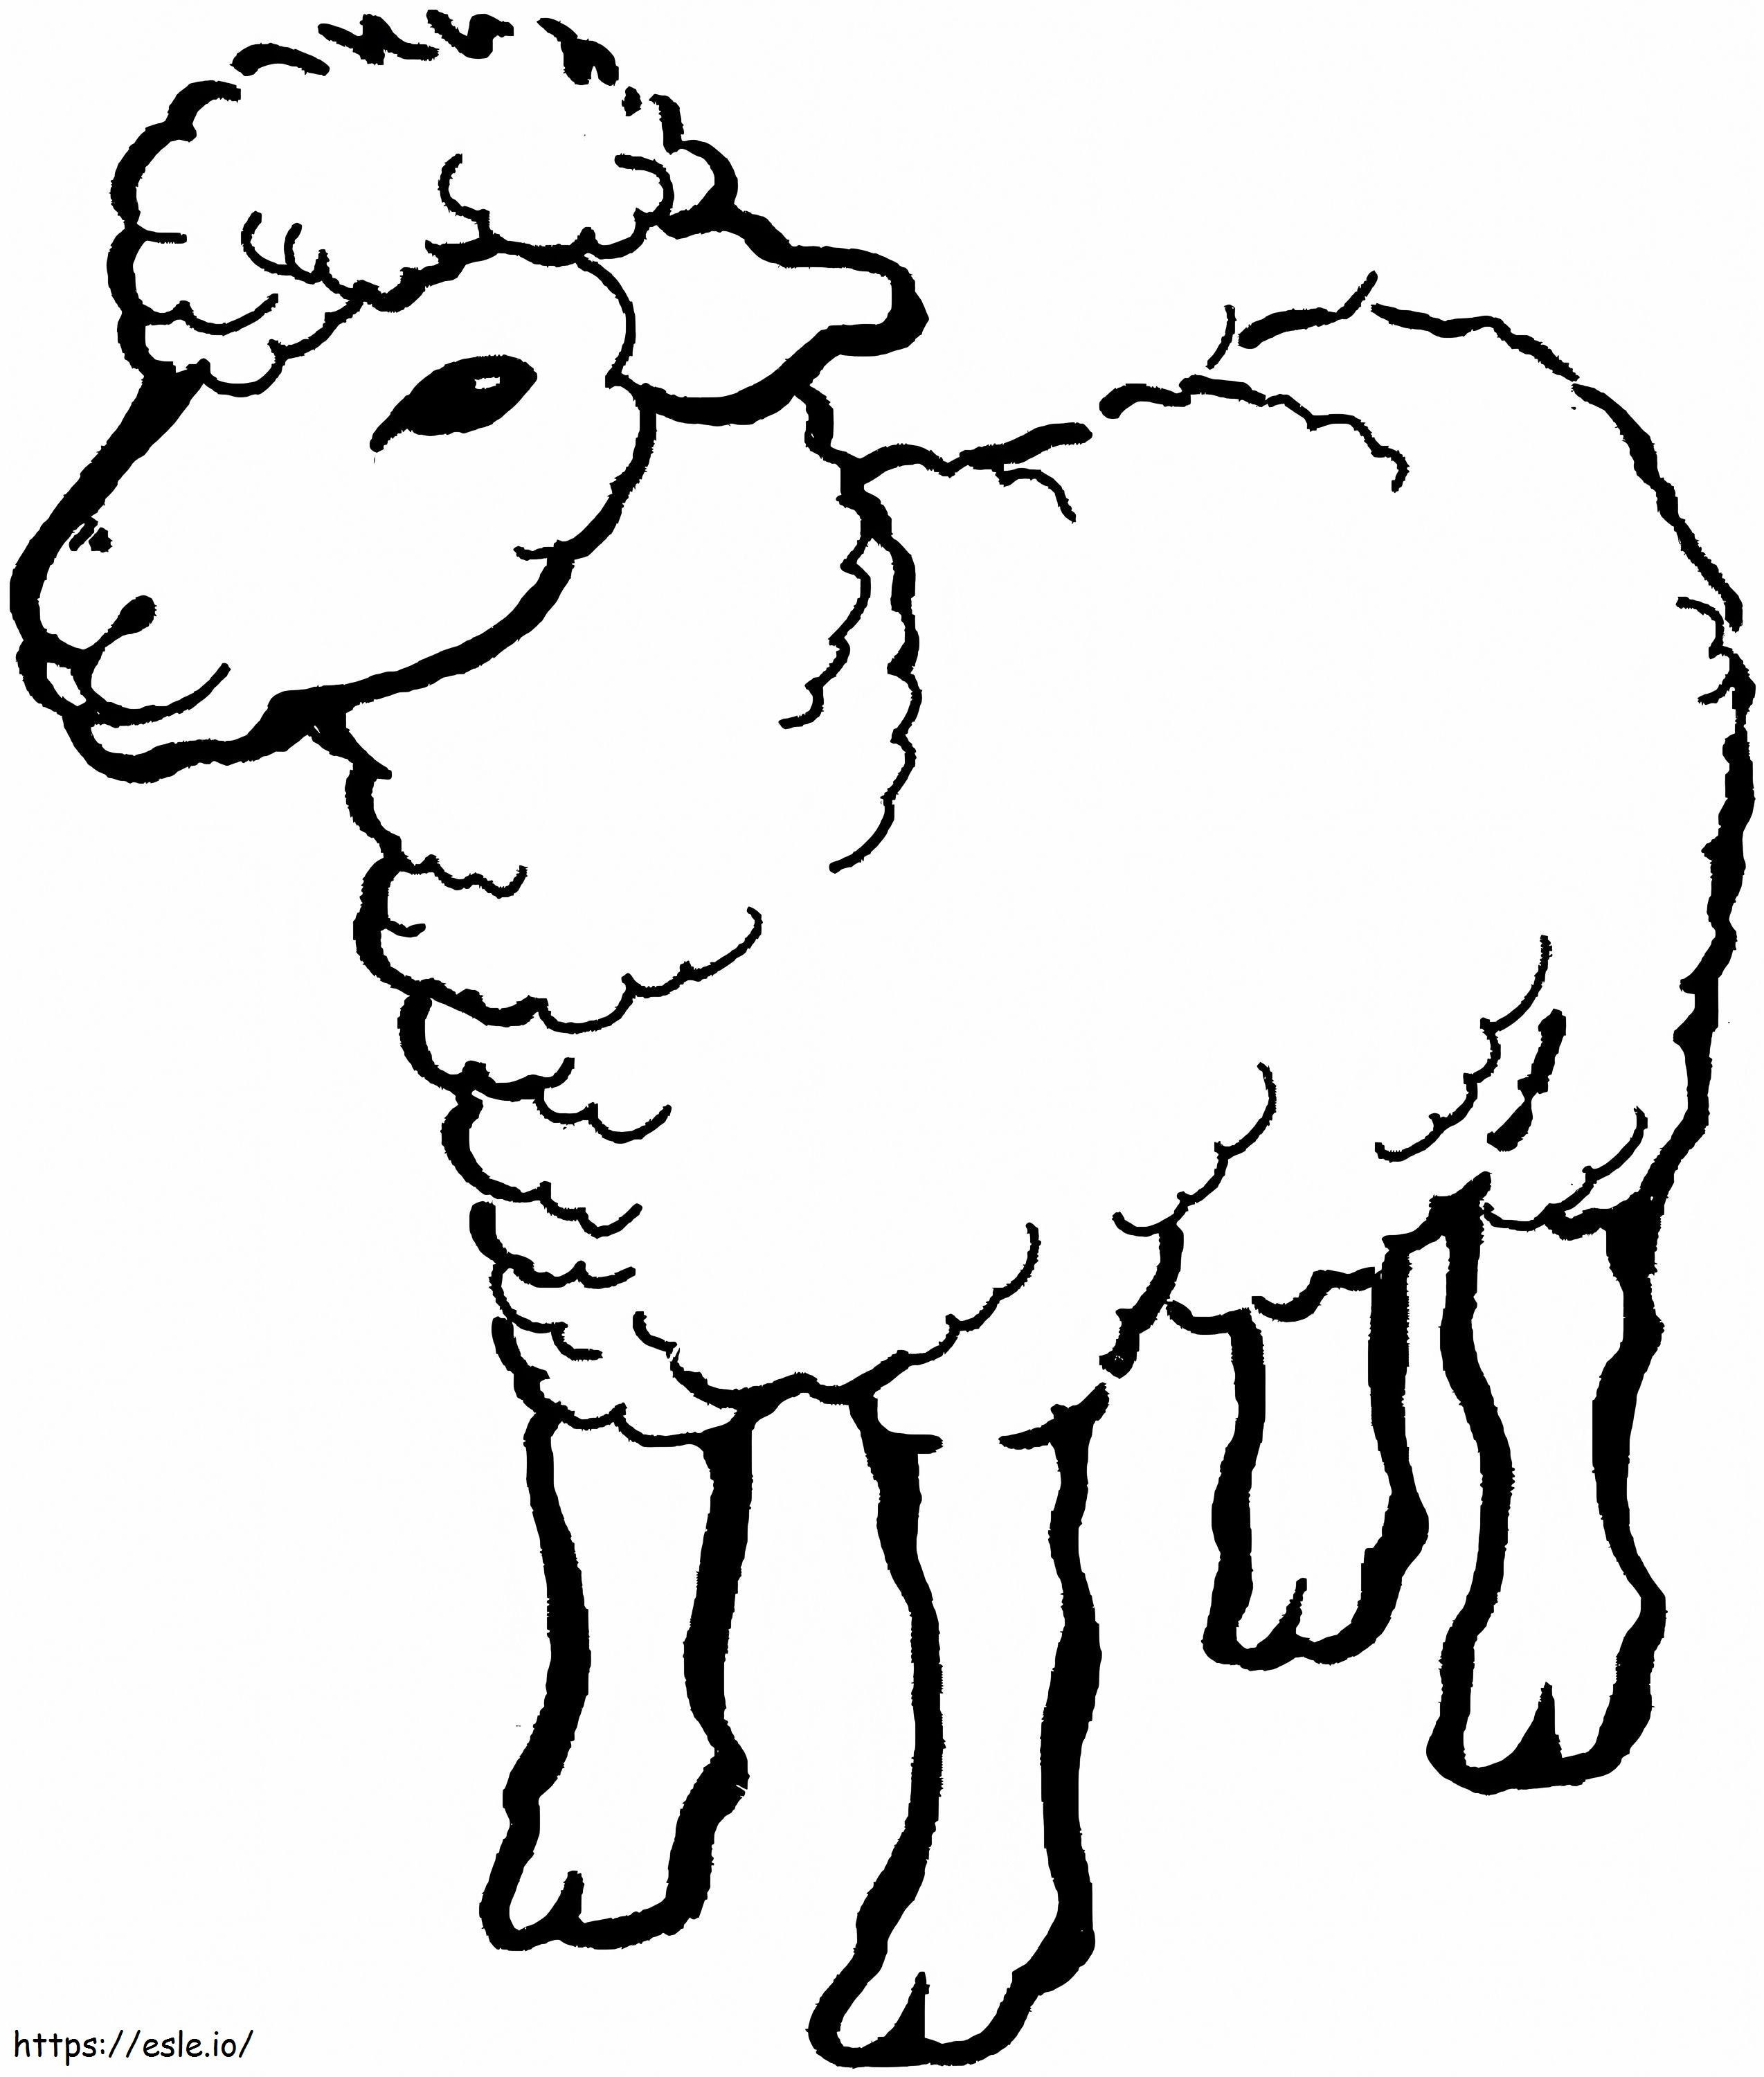 Schafzeichnung ausmalbilder